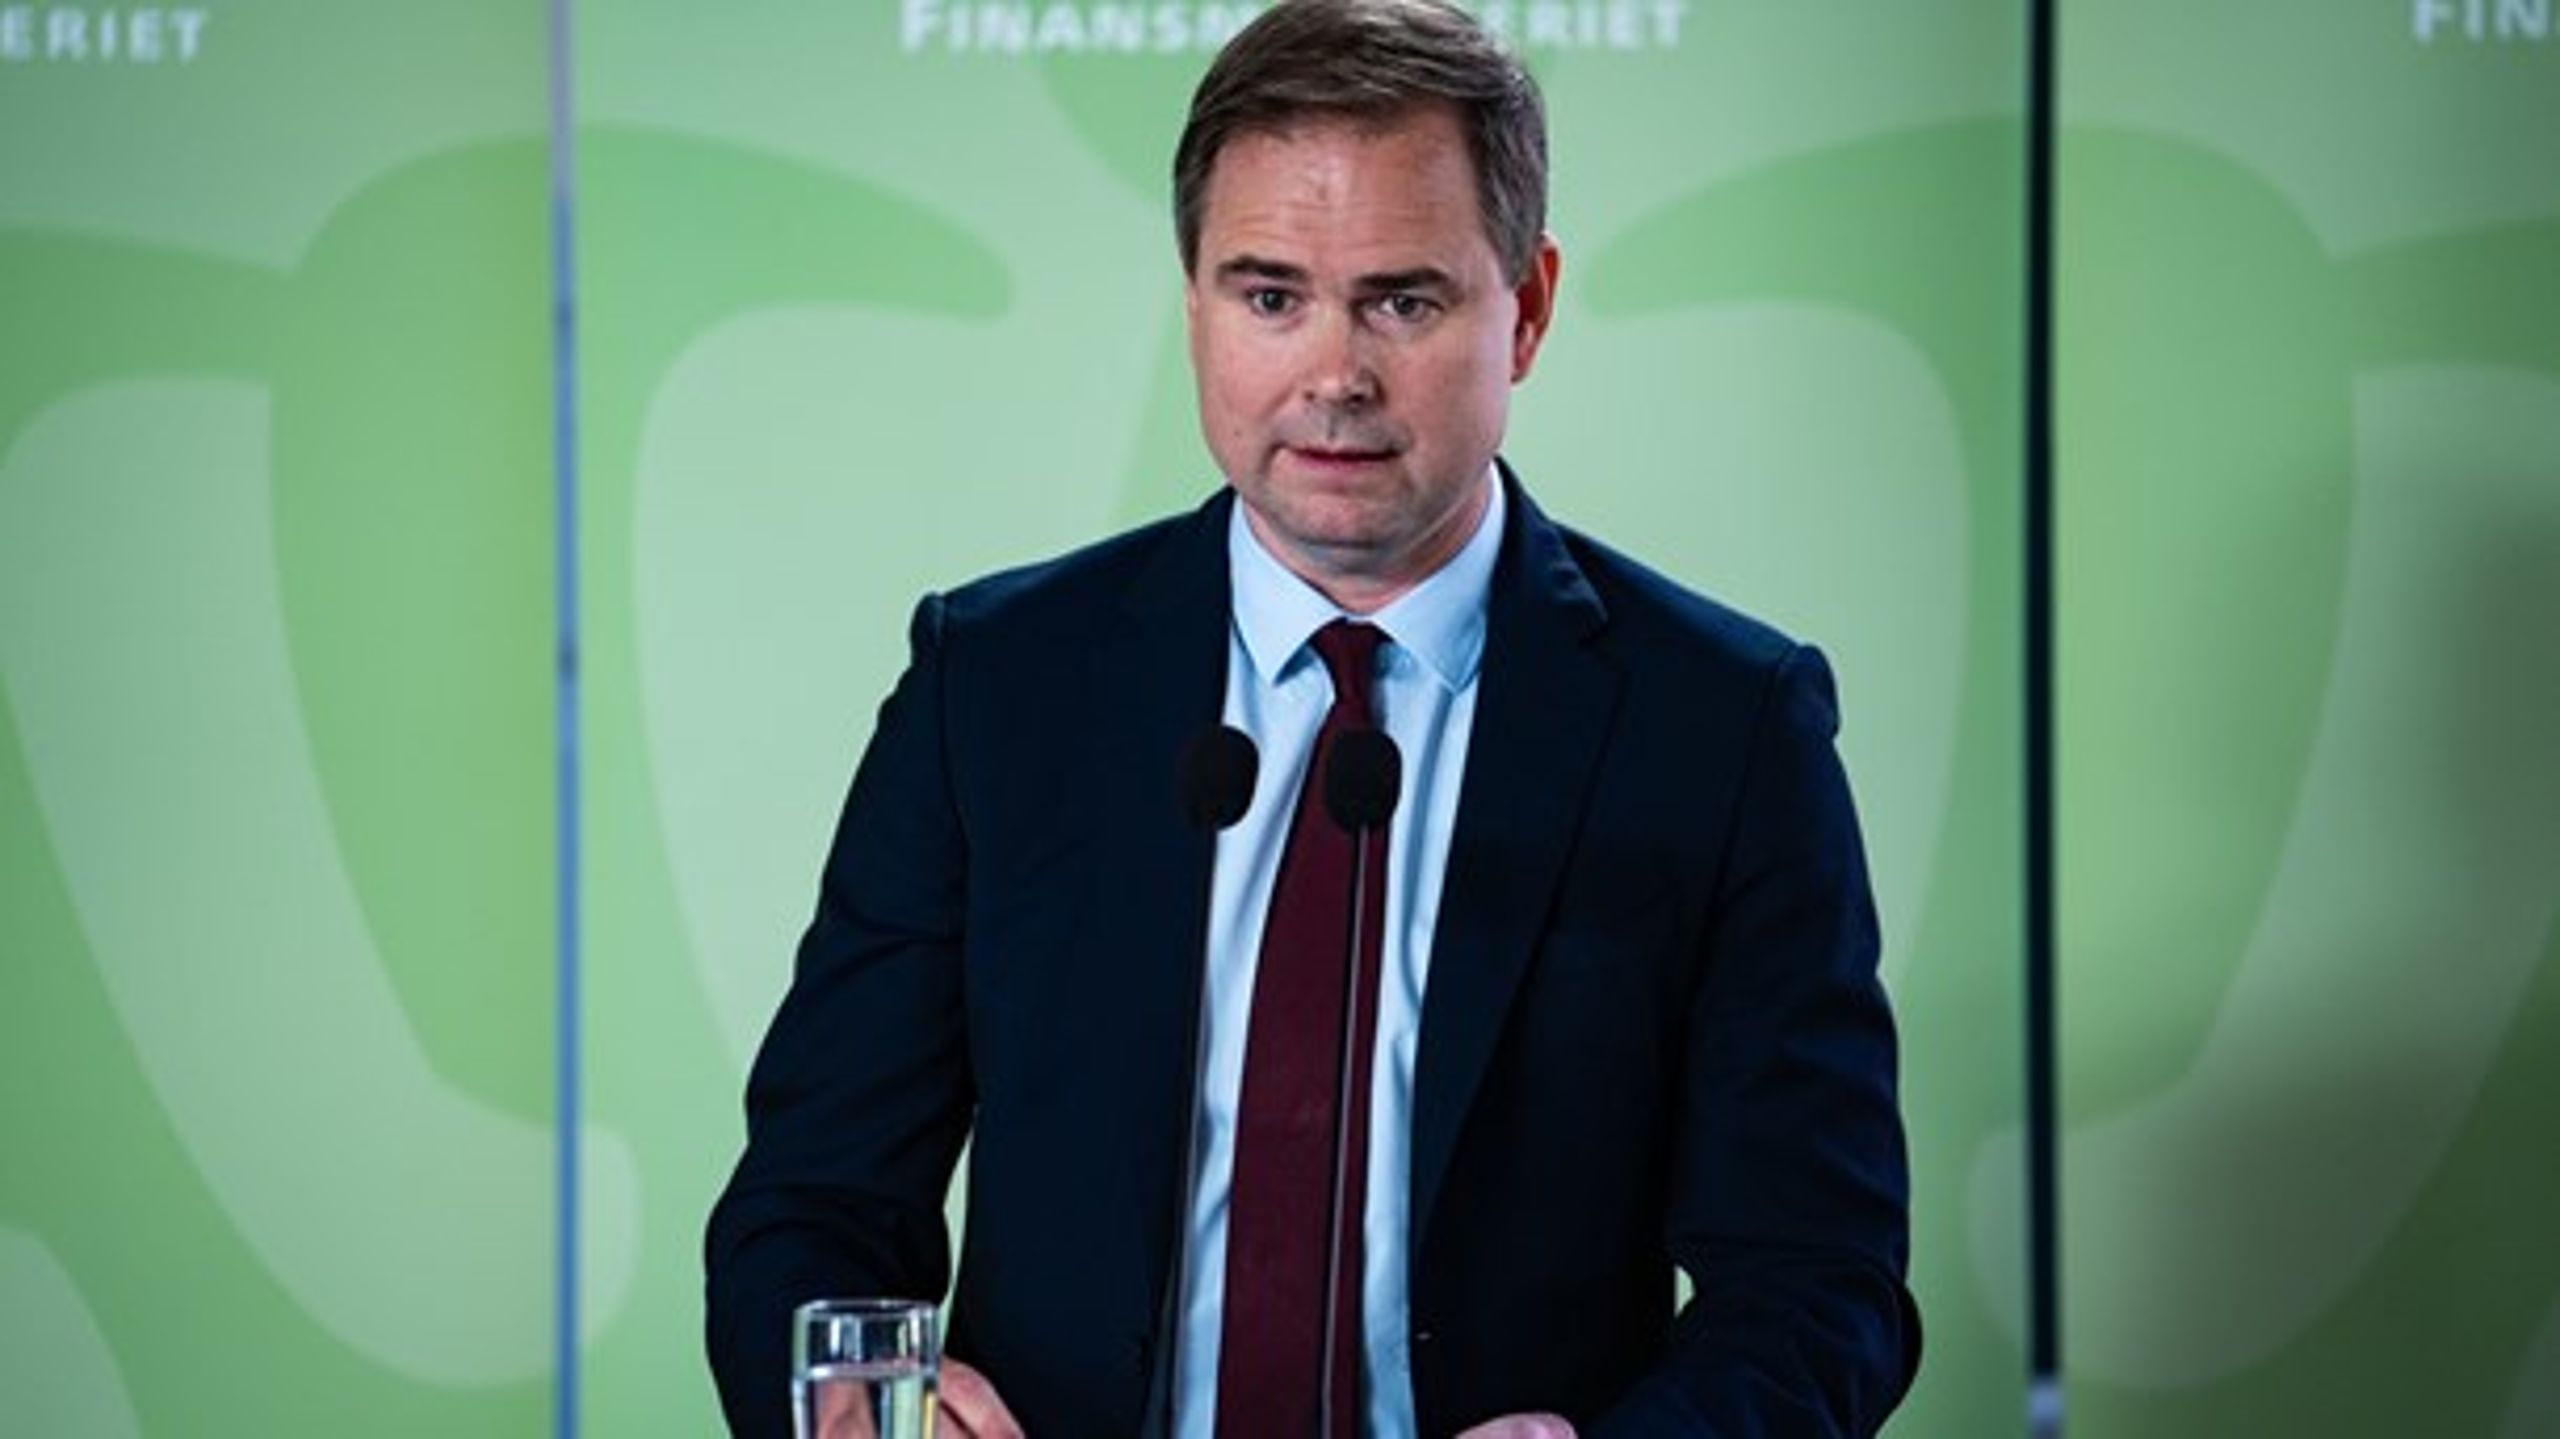 S-finansminister, Nicolai Wammen, da han mandag formiddag præsenterede regeringens finanslovsudspil til et pressemøde i Finansministeriet.